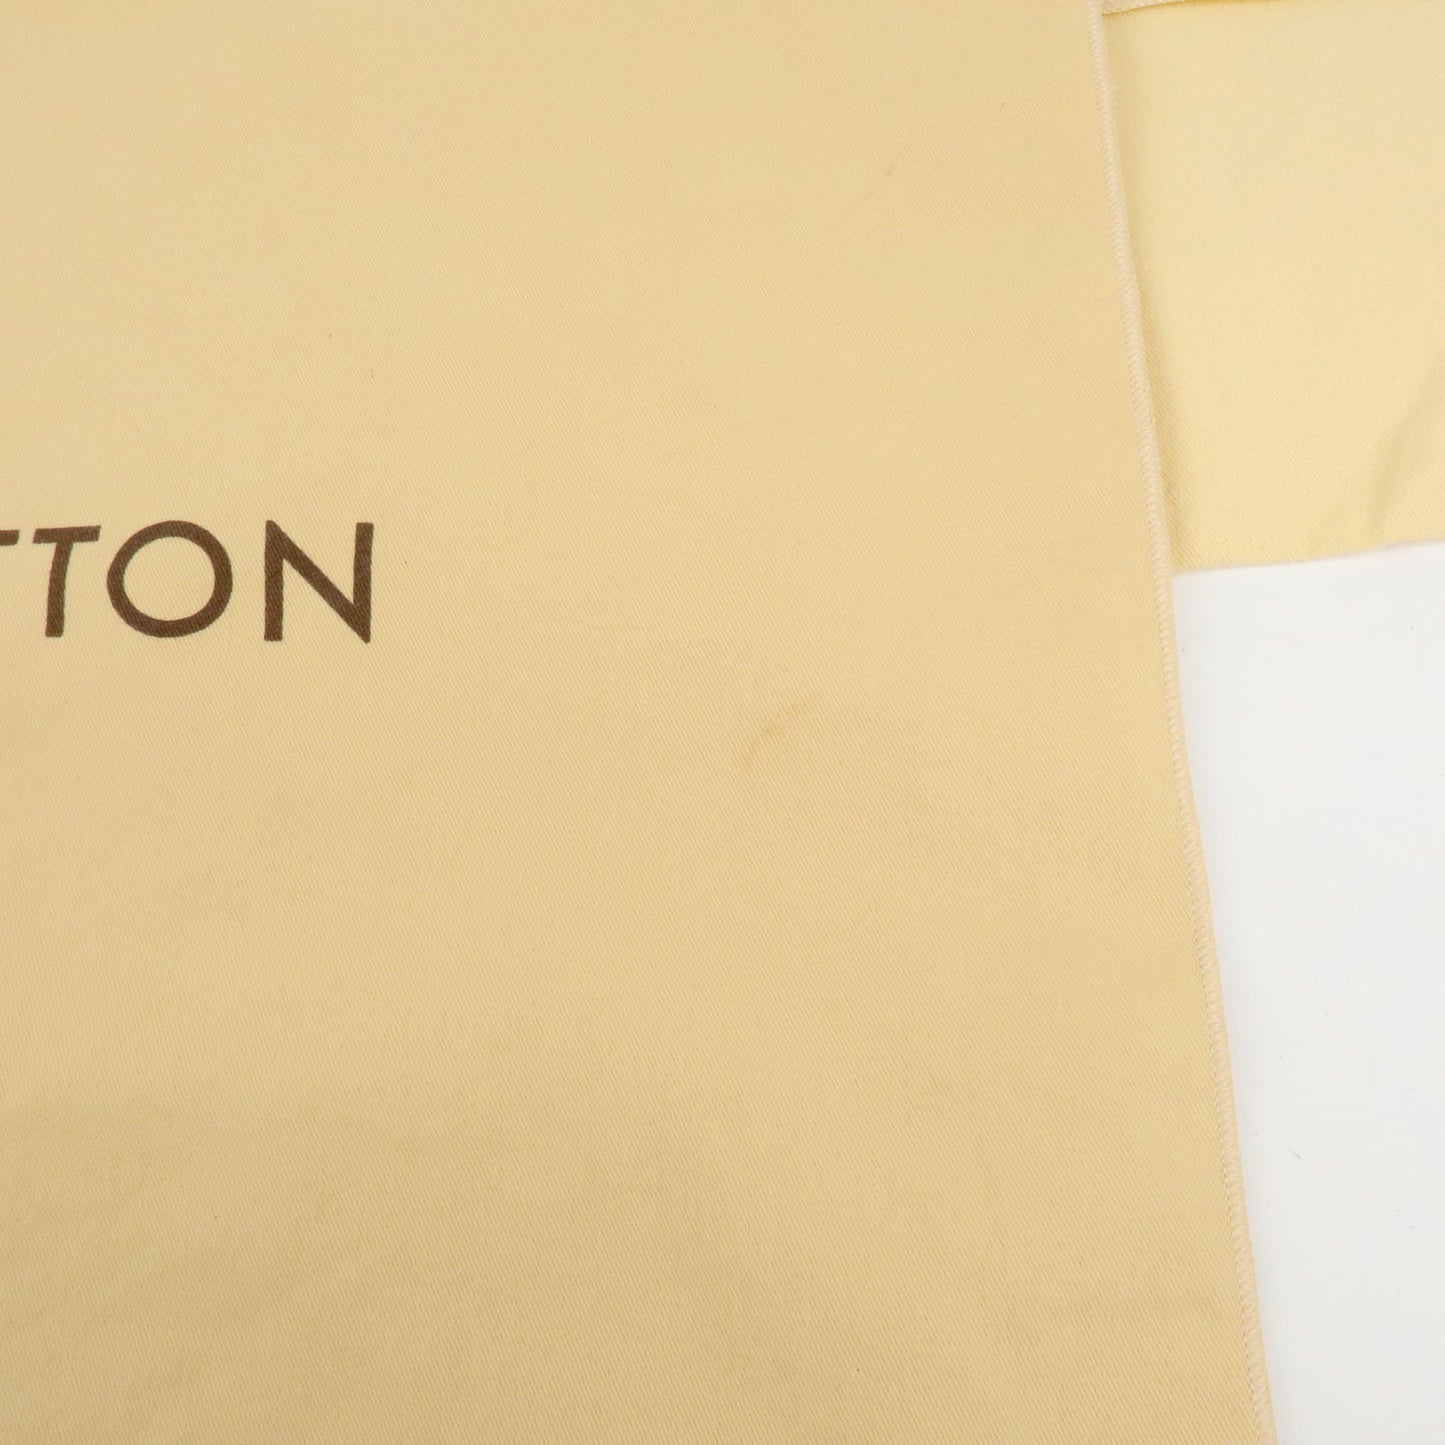 Louis-Vuitton-Set-of-10-Dust-Bag-Flap-Style-Beige – dct-ep_vintage luxury  Store